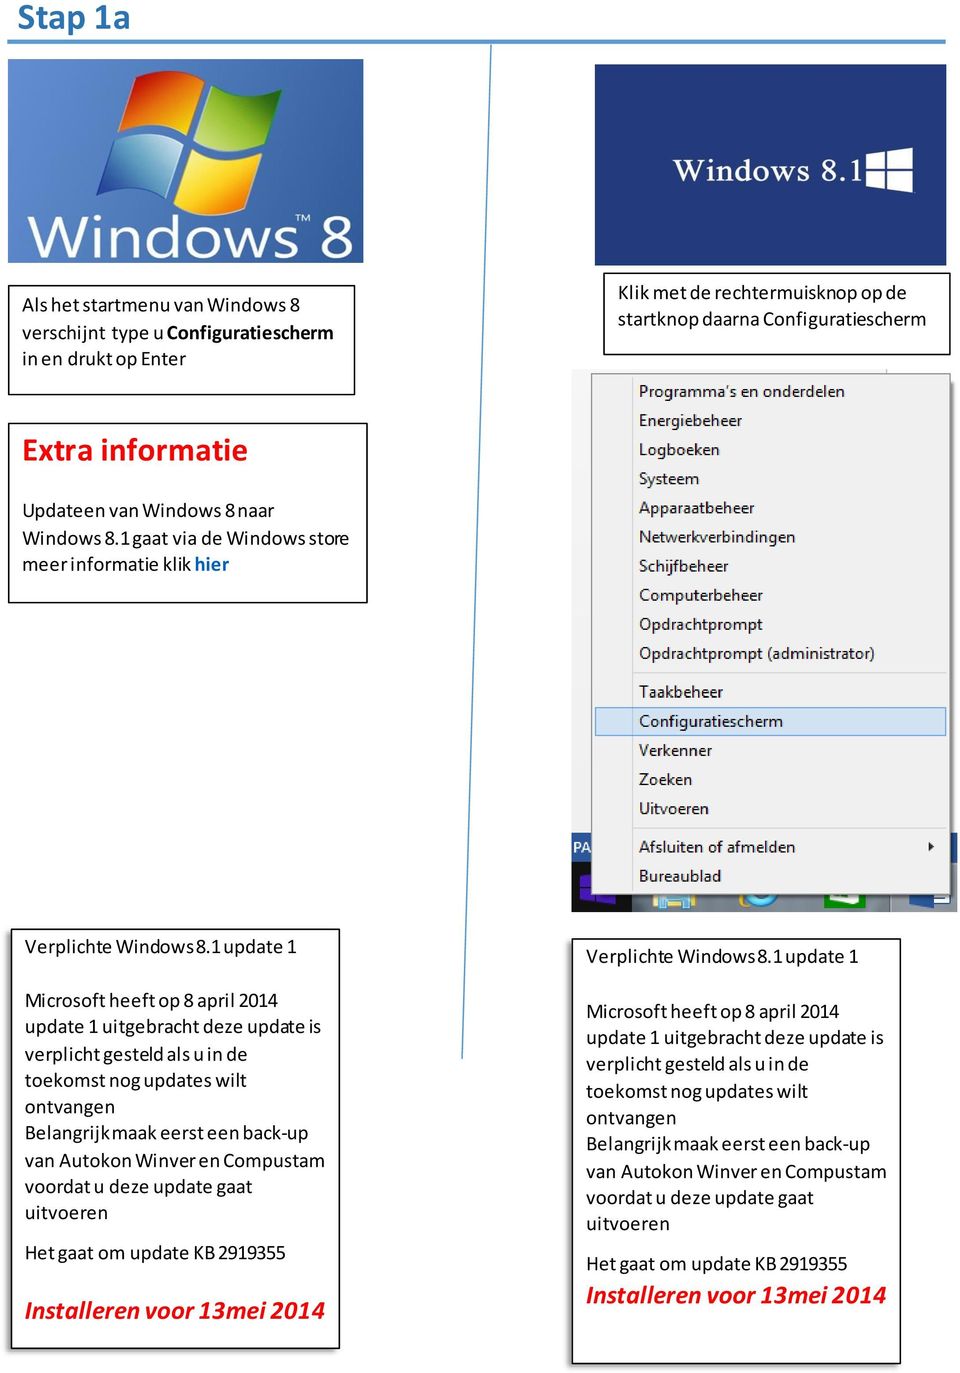 1 update 1 Microsoft heeft op 8 april 2014 update 1 uitgebracht deze update is verplicht gesteld als u in de toekomst nog updates wilt ontvangen Belangrijk maak eerst een back-up van Autokon Winver